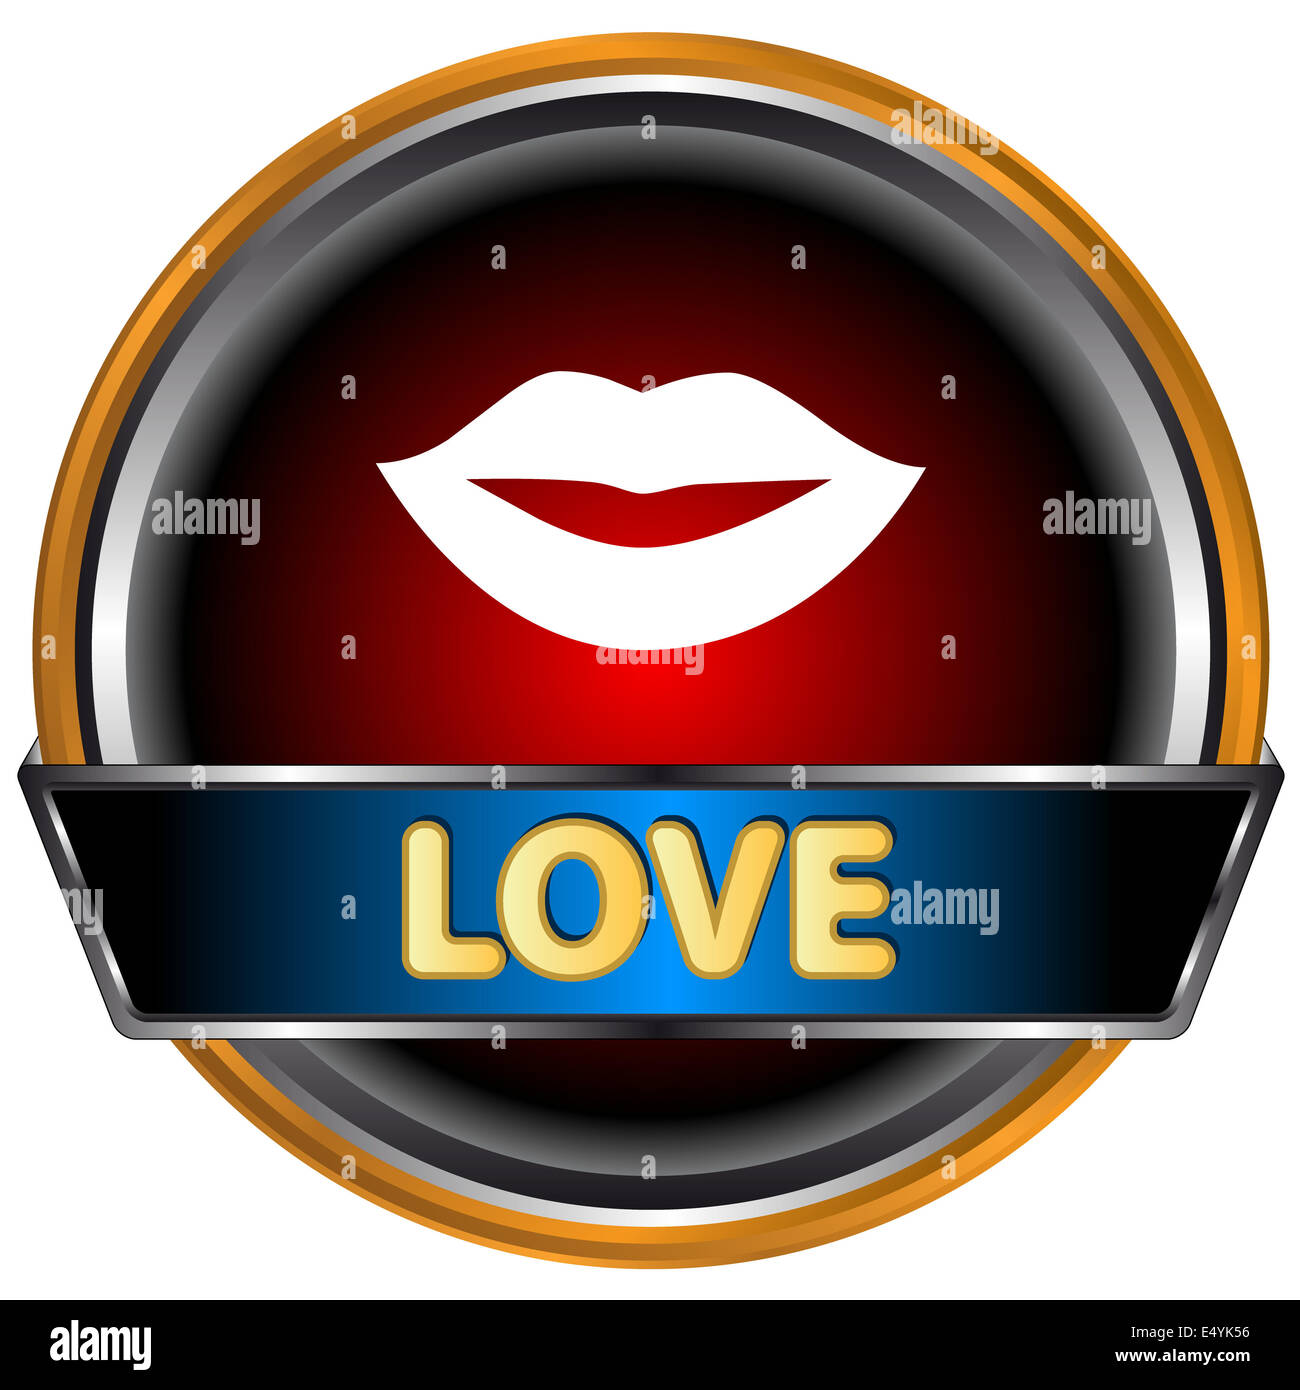 Love icon Stock Photo